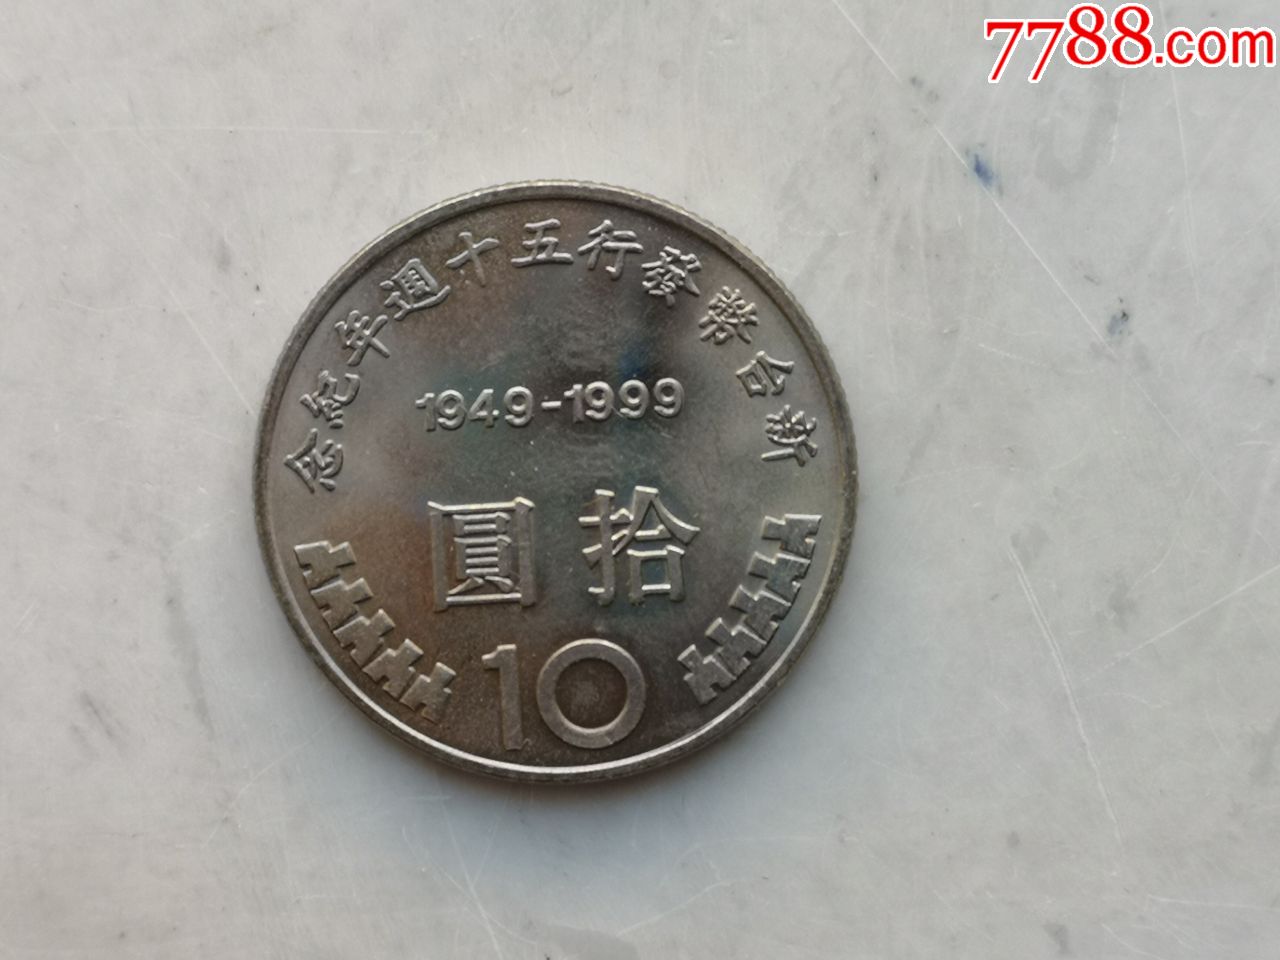 台湾新台币发行50周年纪念币